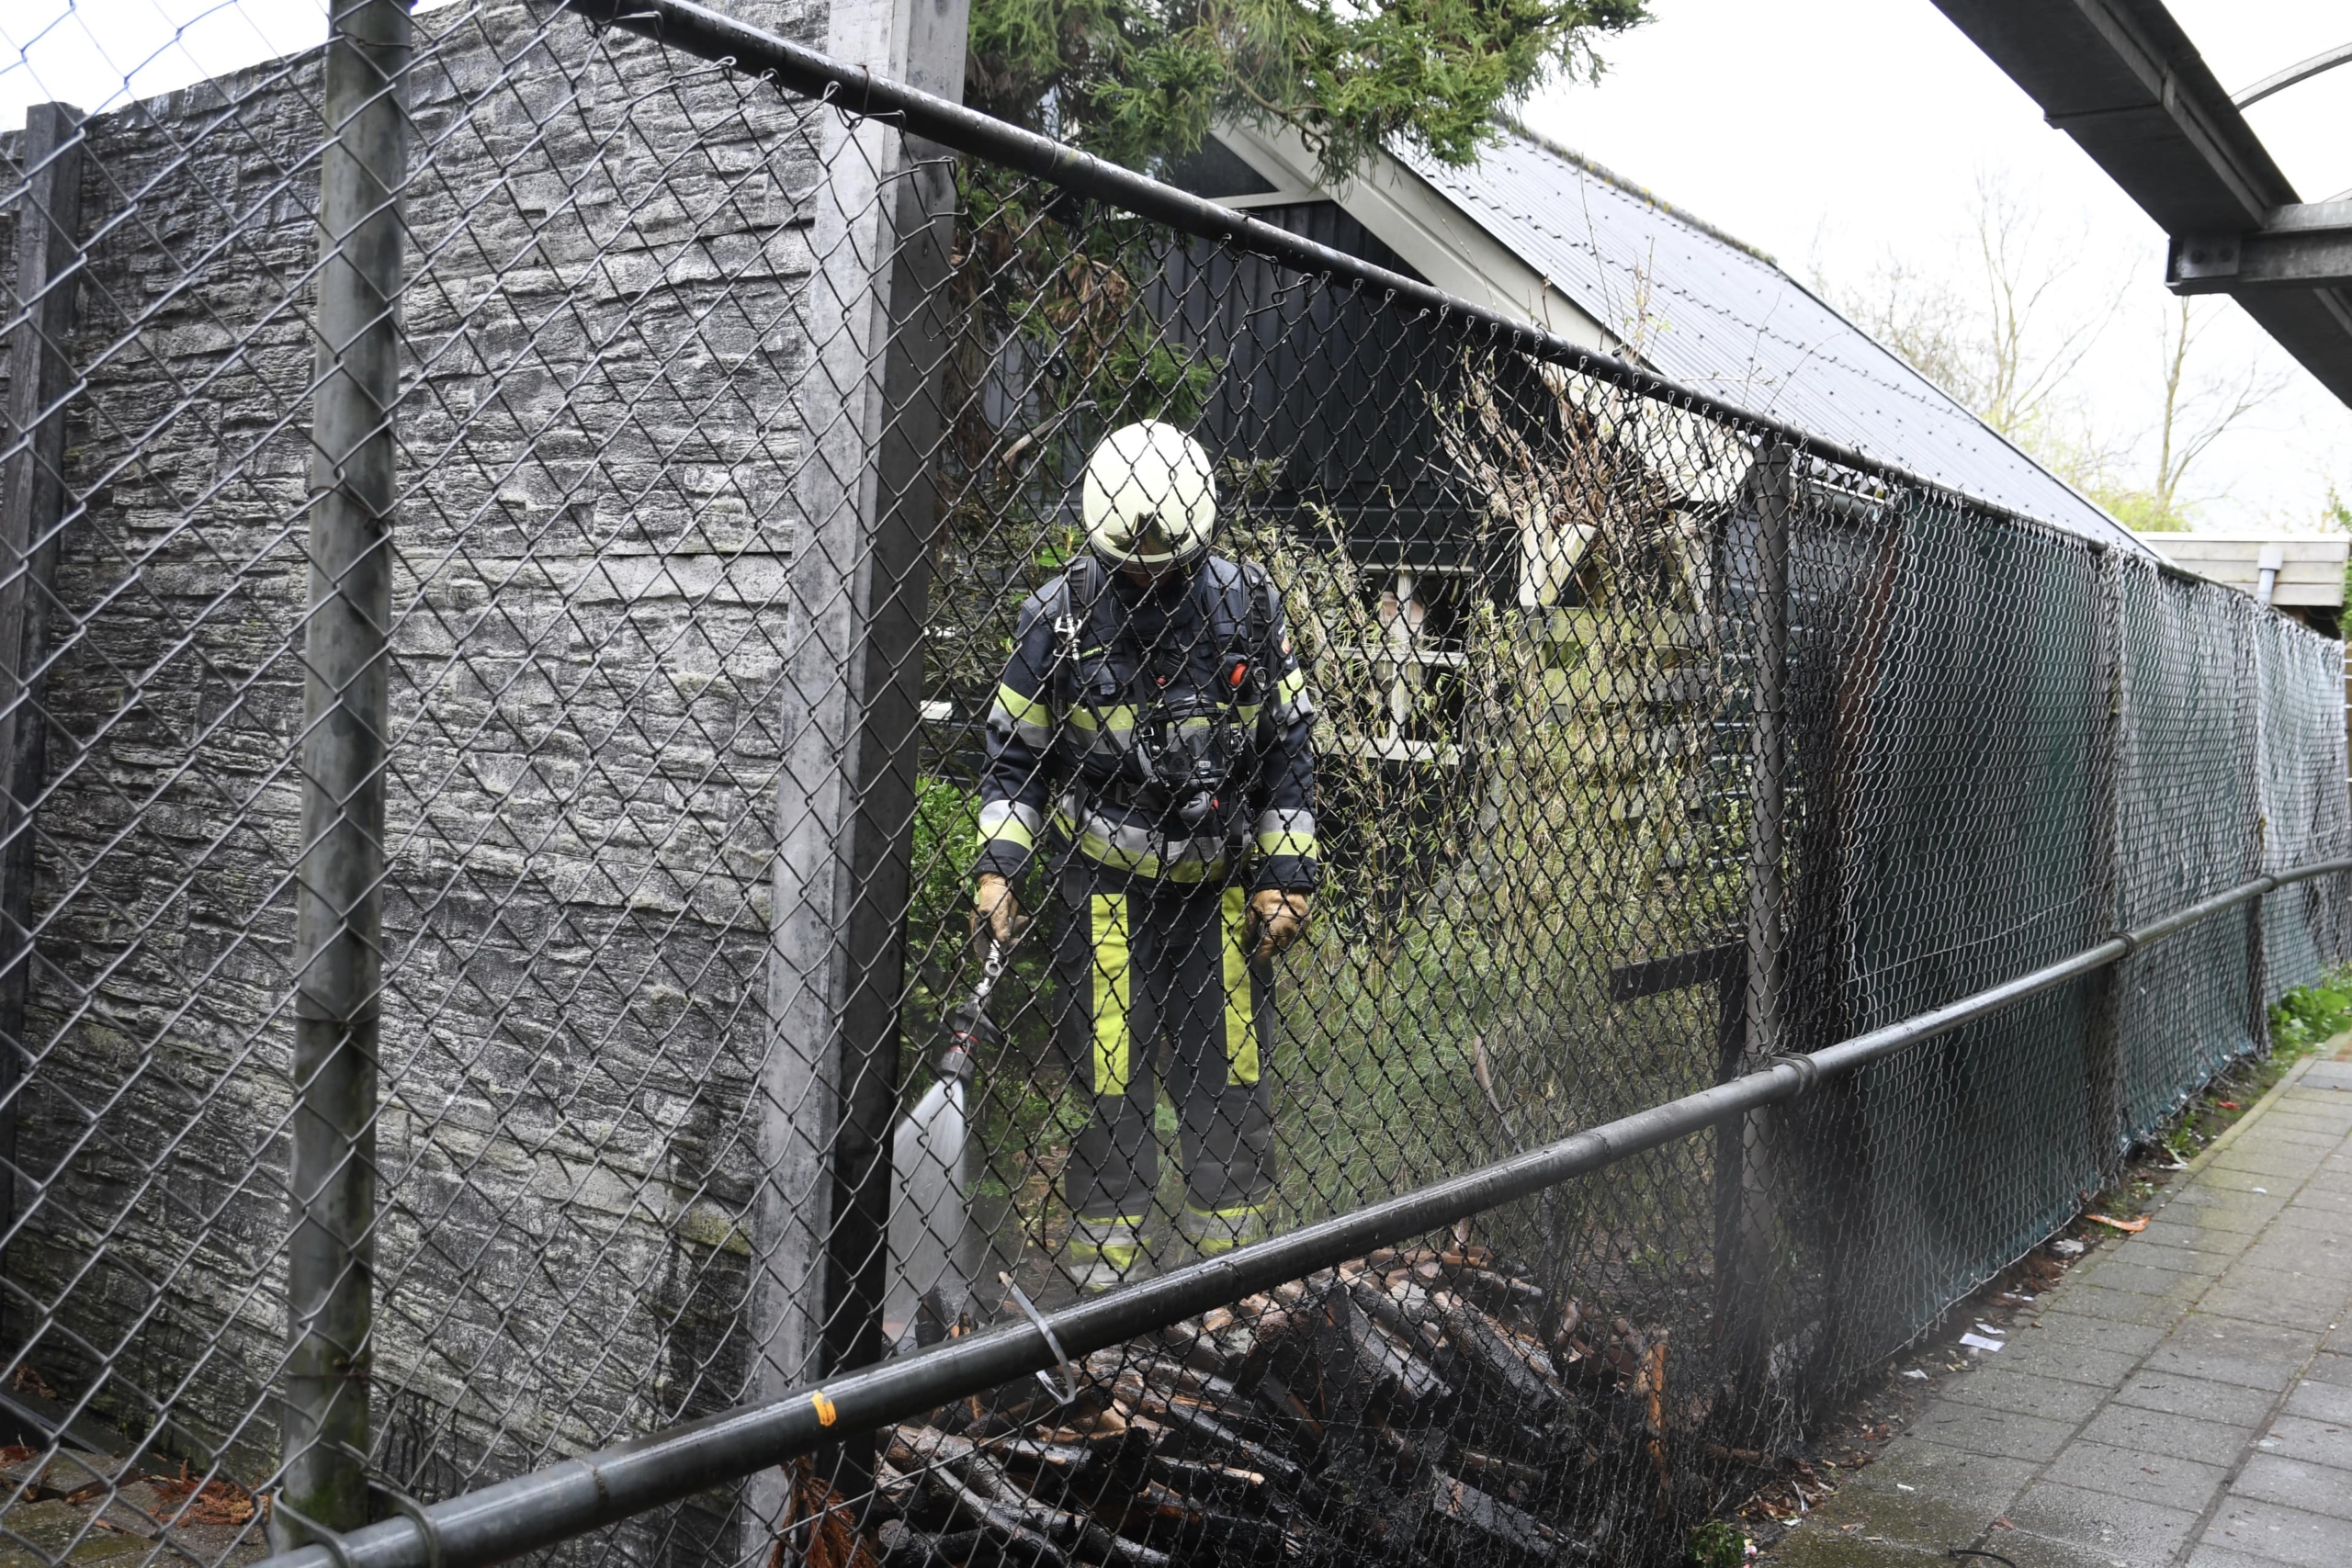 Buitenbrand in tuin geblust door brandweer, vermoedelijk brandstichting